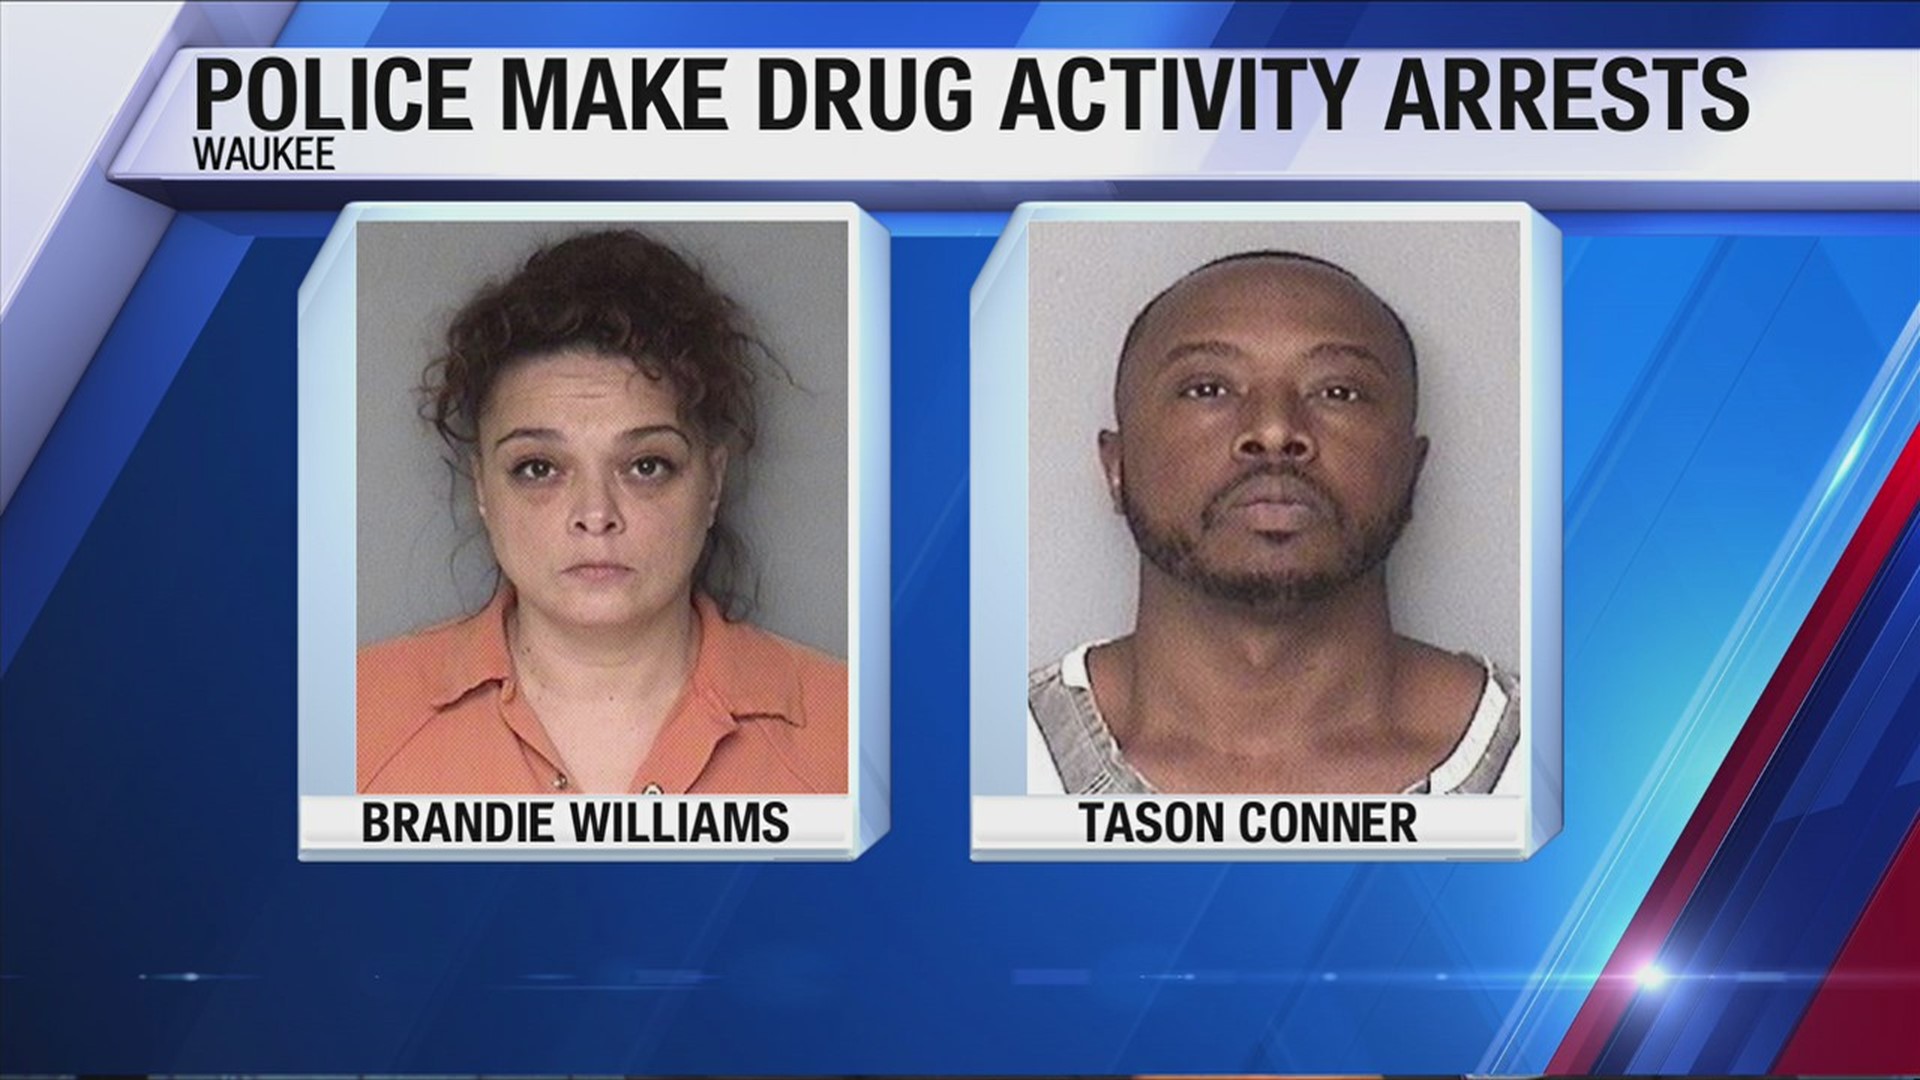 Police make drug activity arrests